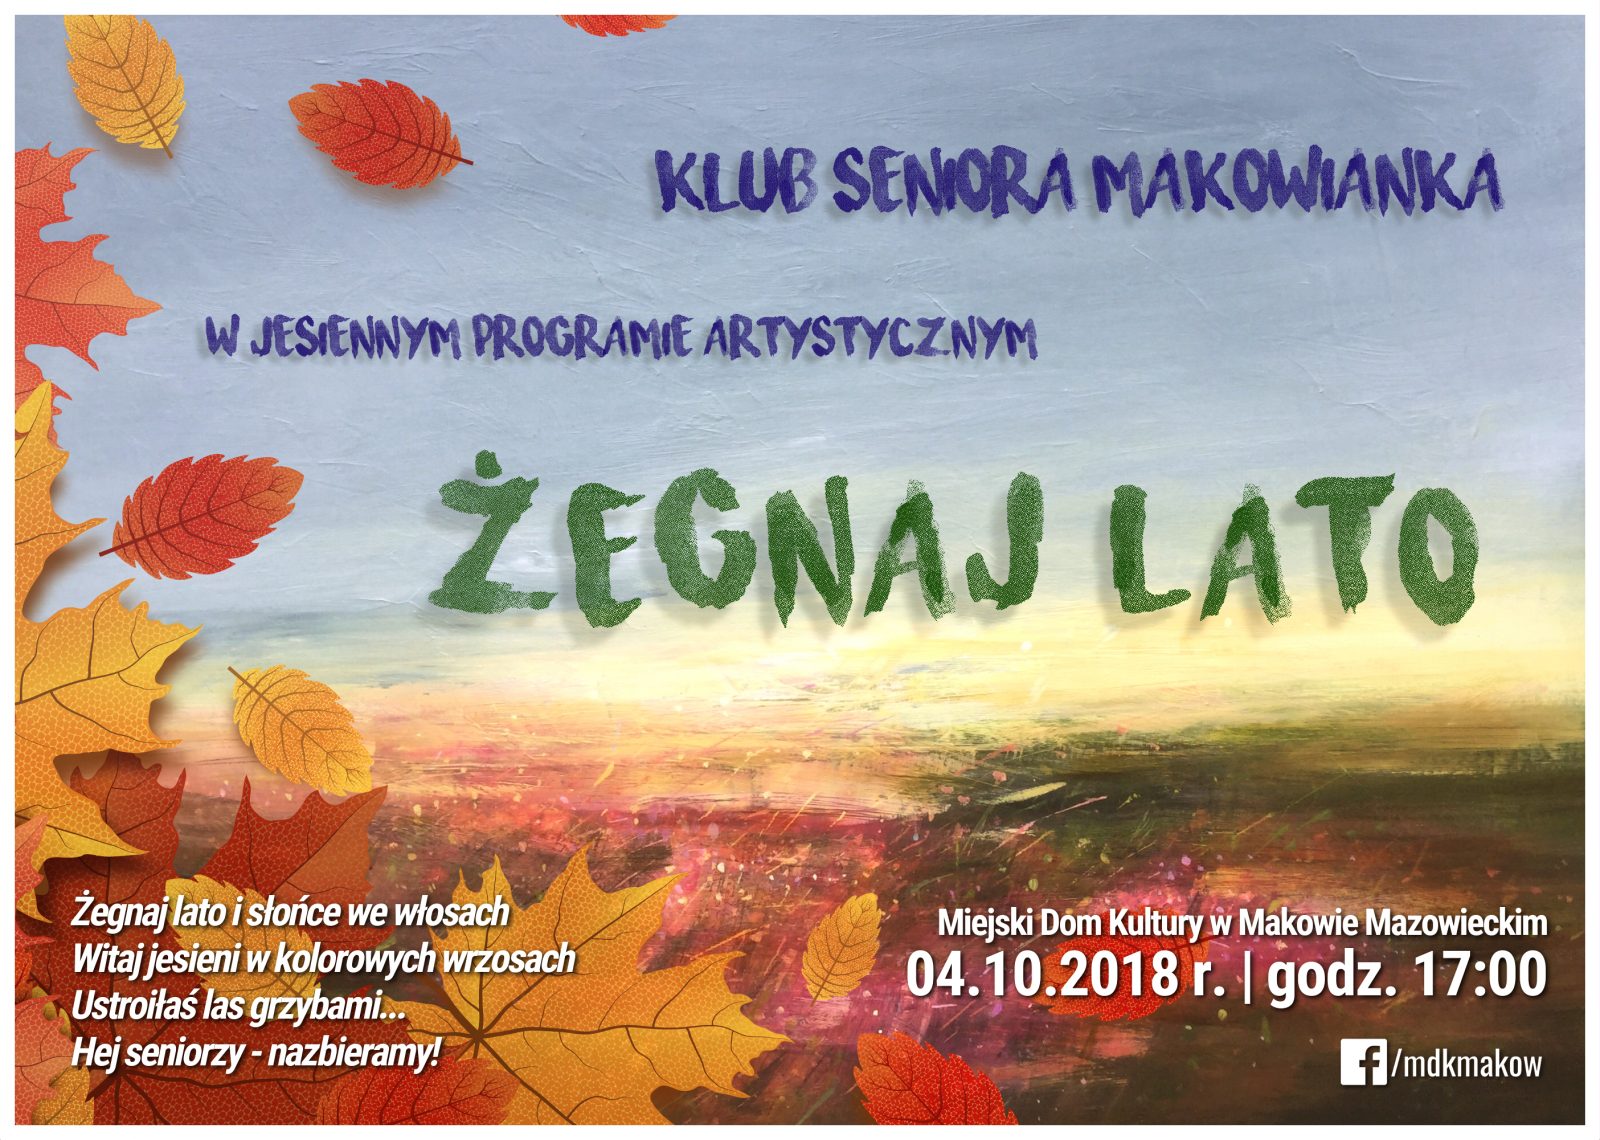 Plakat. Klub seniora Makowianka zaprasza na program artystyczny pt. Żegnaj Lato. 4 października 2018 godzina 17:00